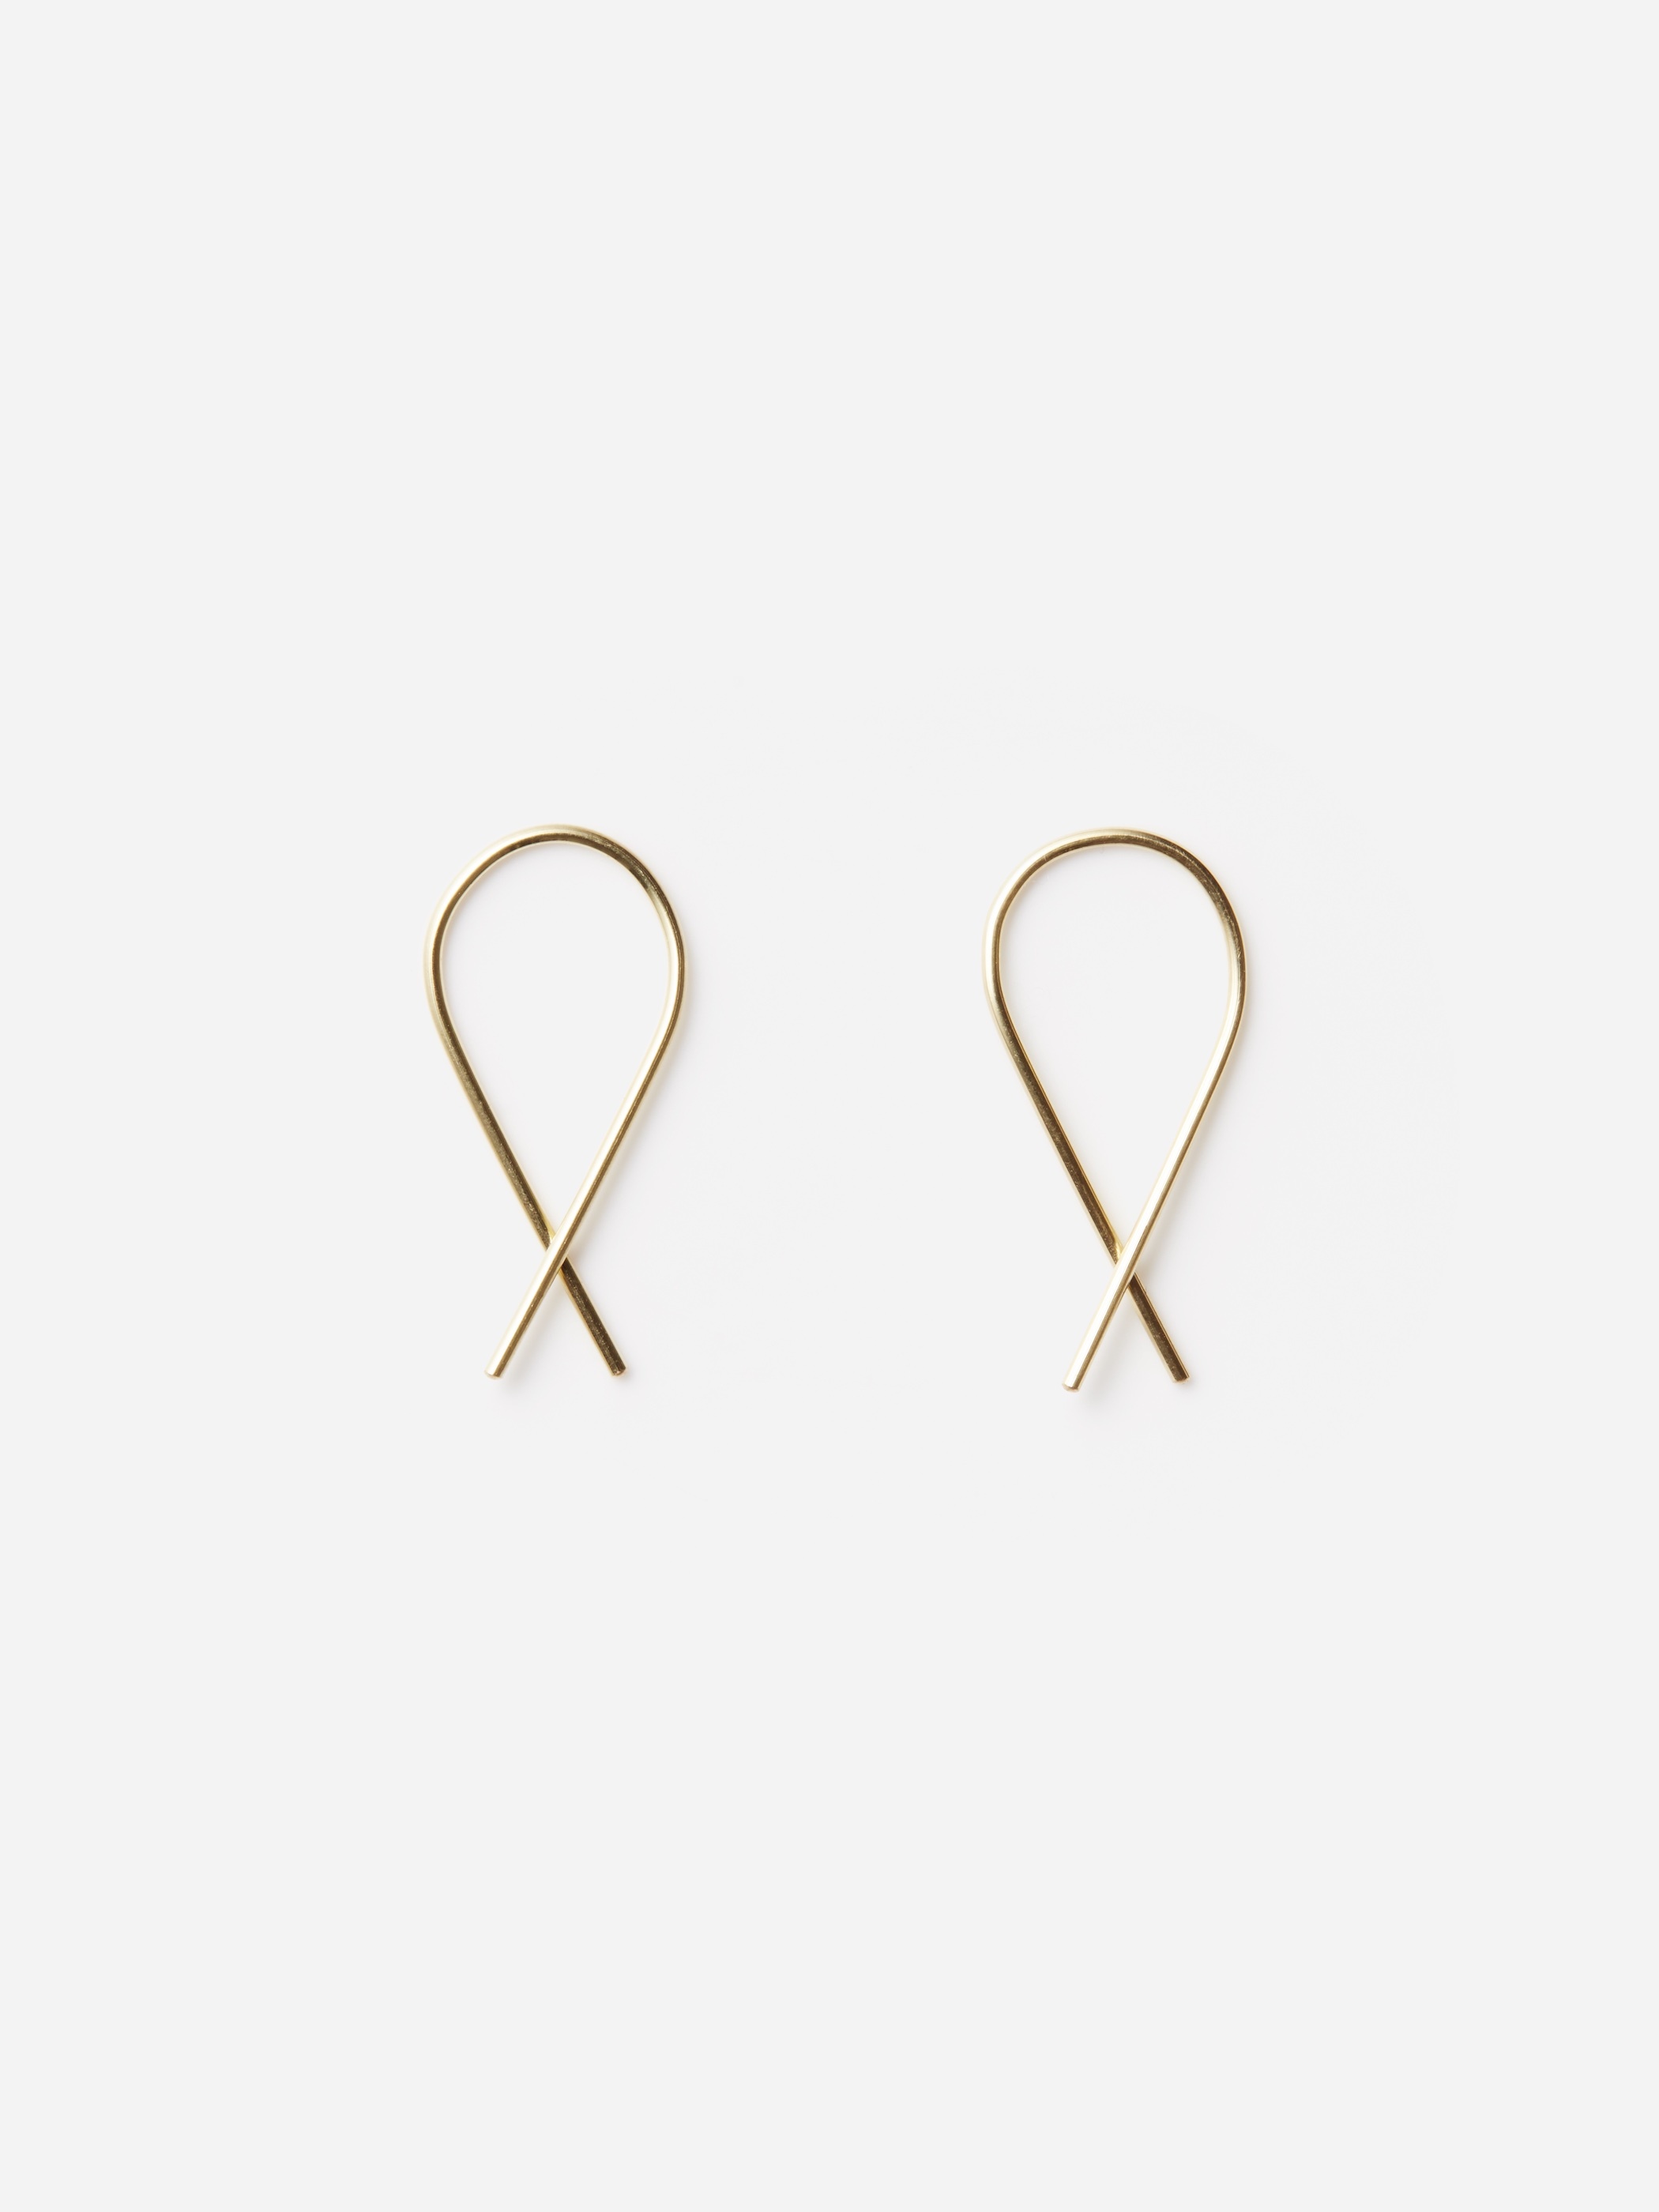 Marc Monzo / X earrings